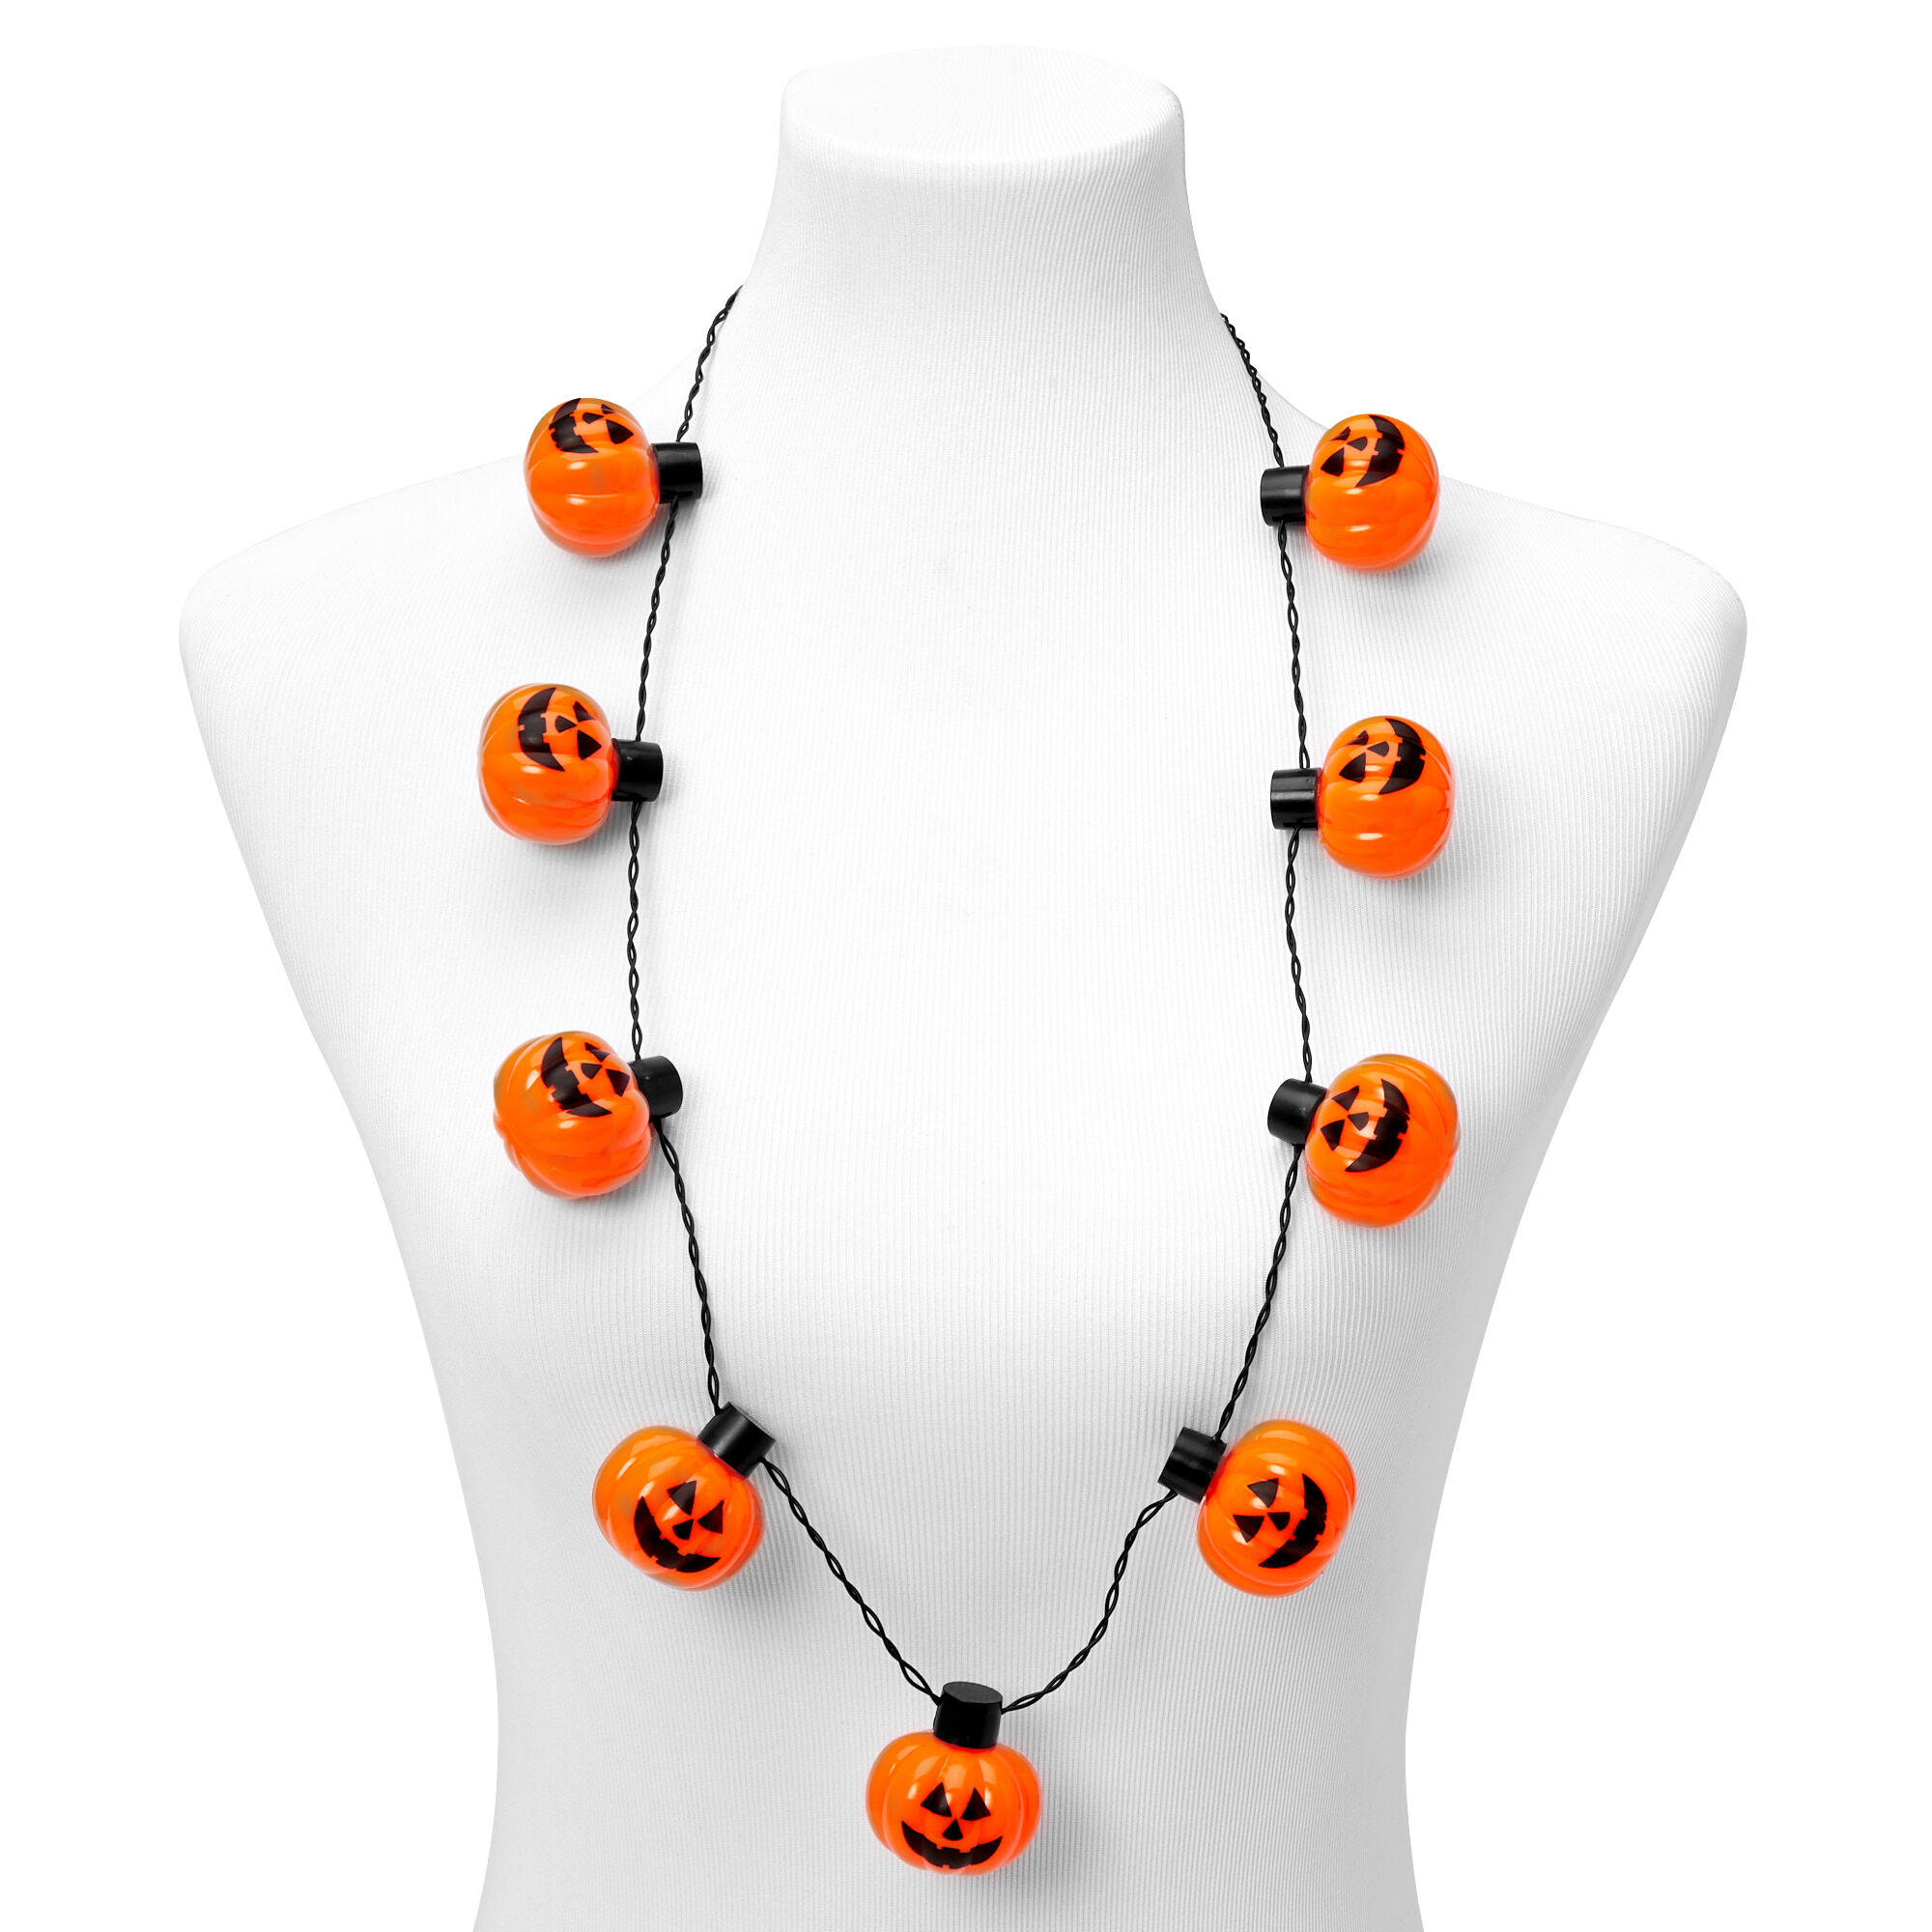 JOYIN 3 Pcs Halloween LED Necklace Pumpkin Shaped Nigeria | Ubuy